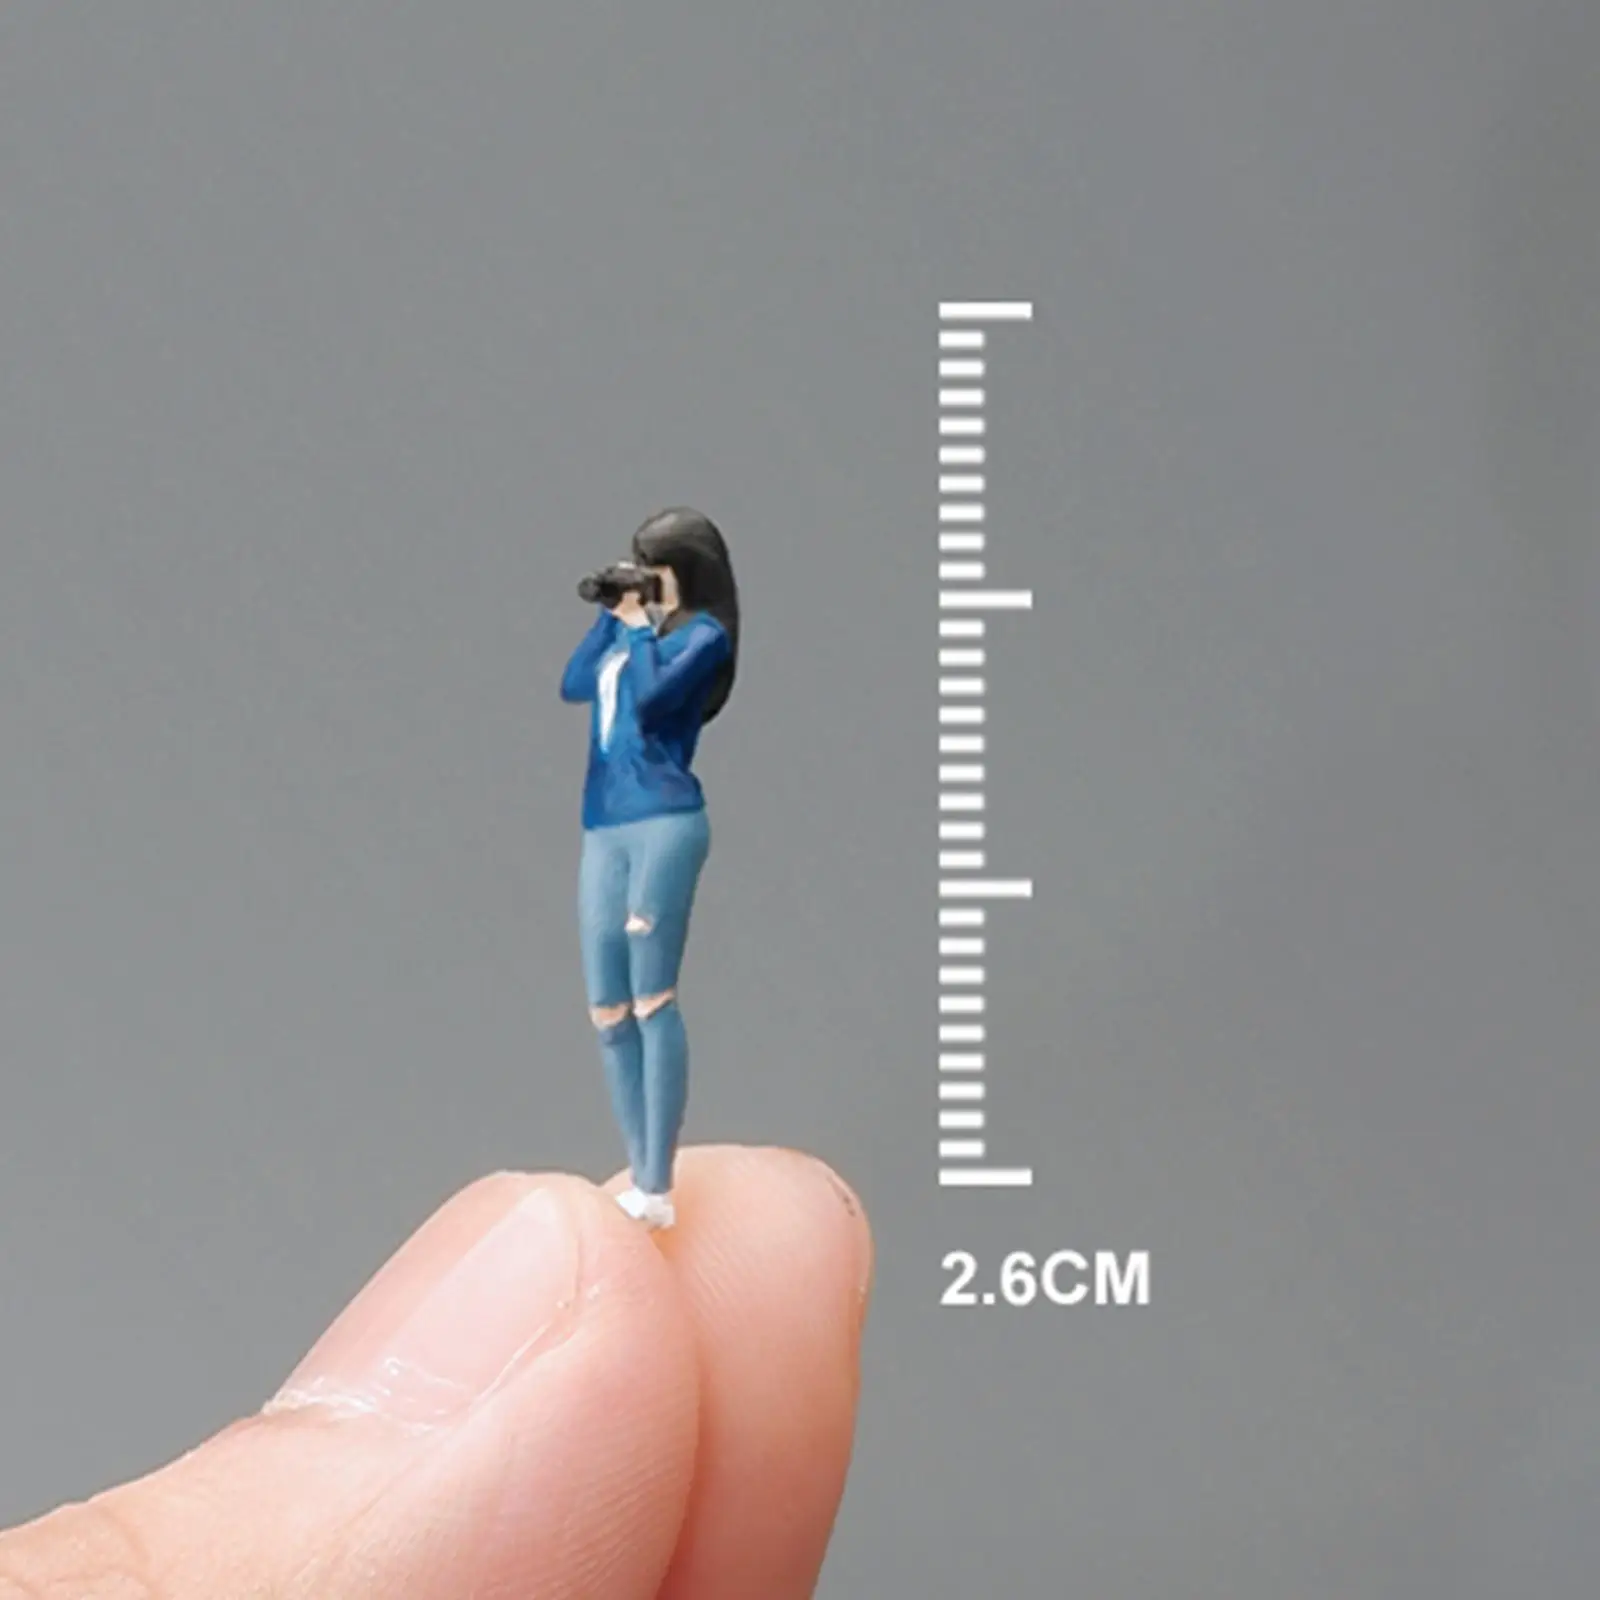 1/64 Scale Diorama Figure for Model Trains Micro Landscape Desktop Ornament